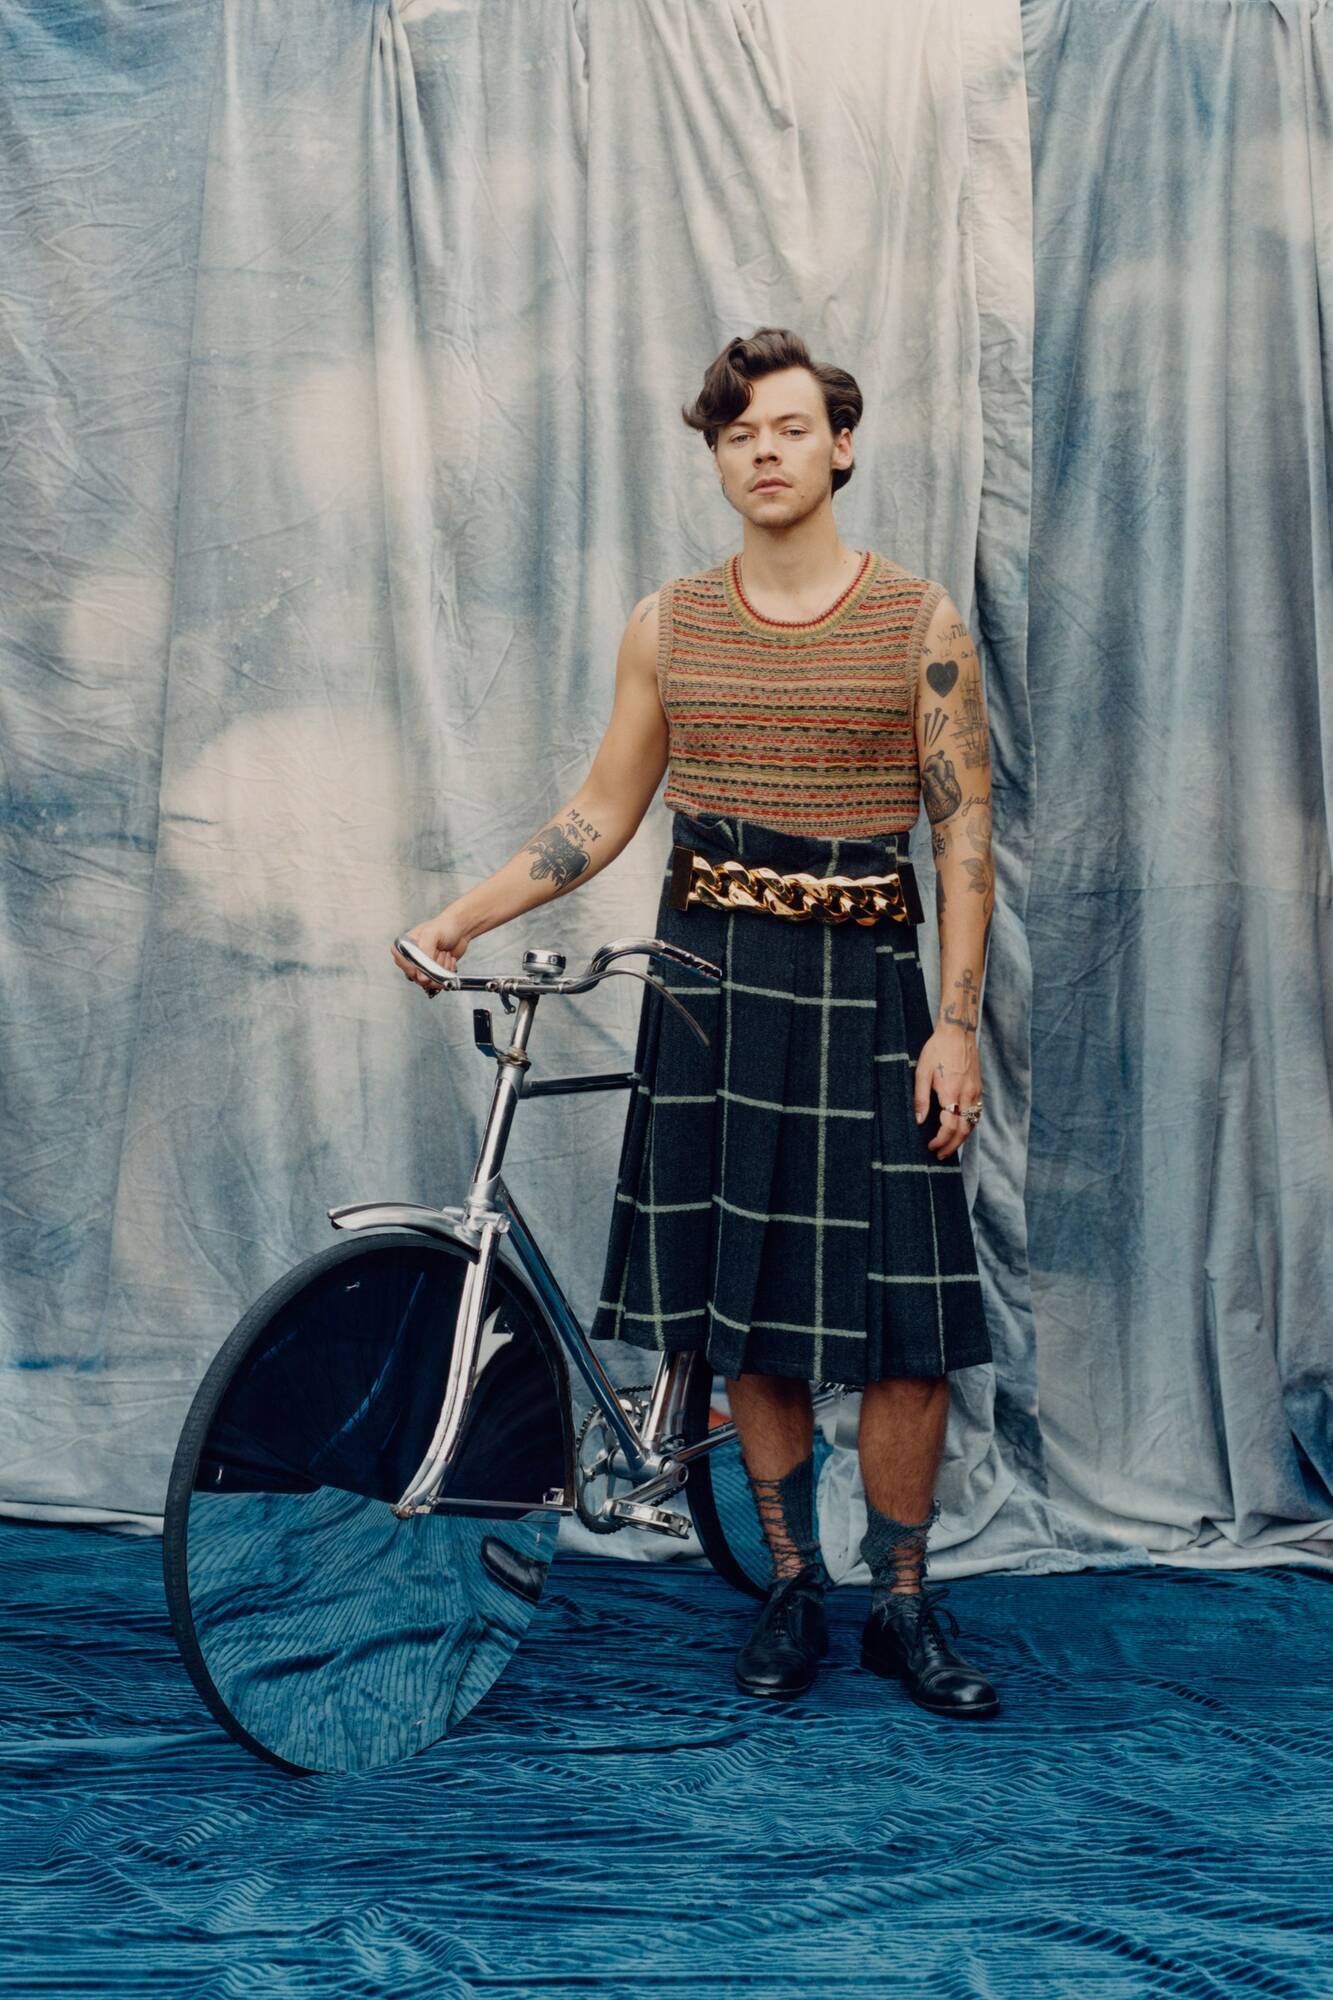 Гарри Стайлс появился на обложке журнала "Vogue" в женской одежде